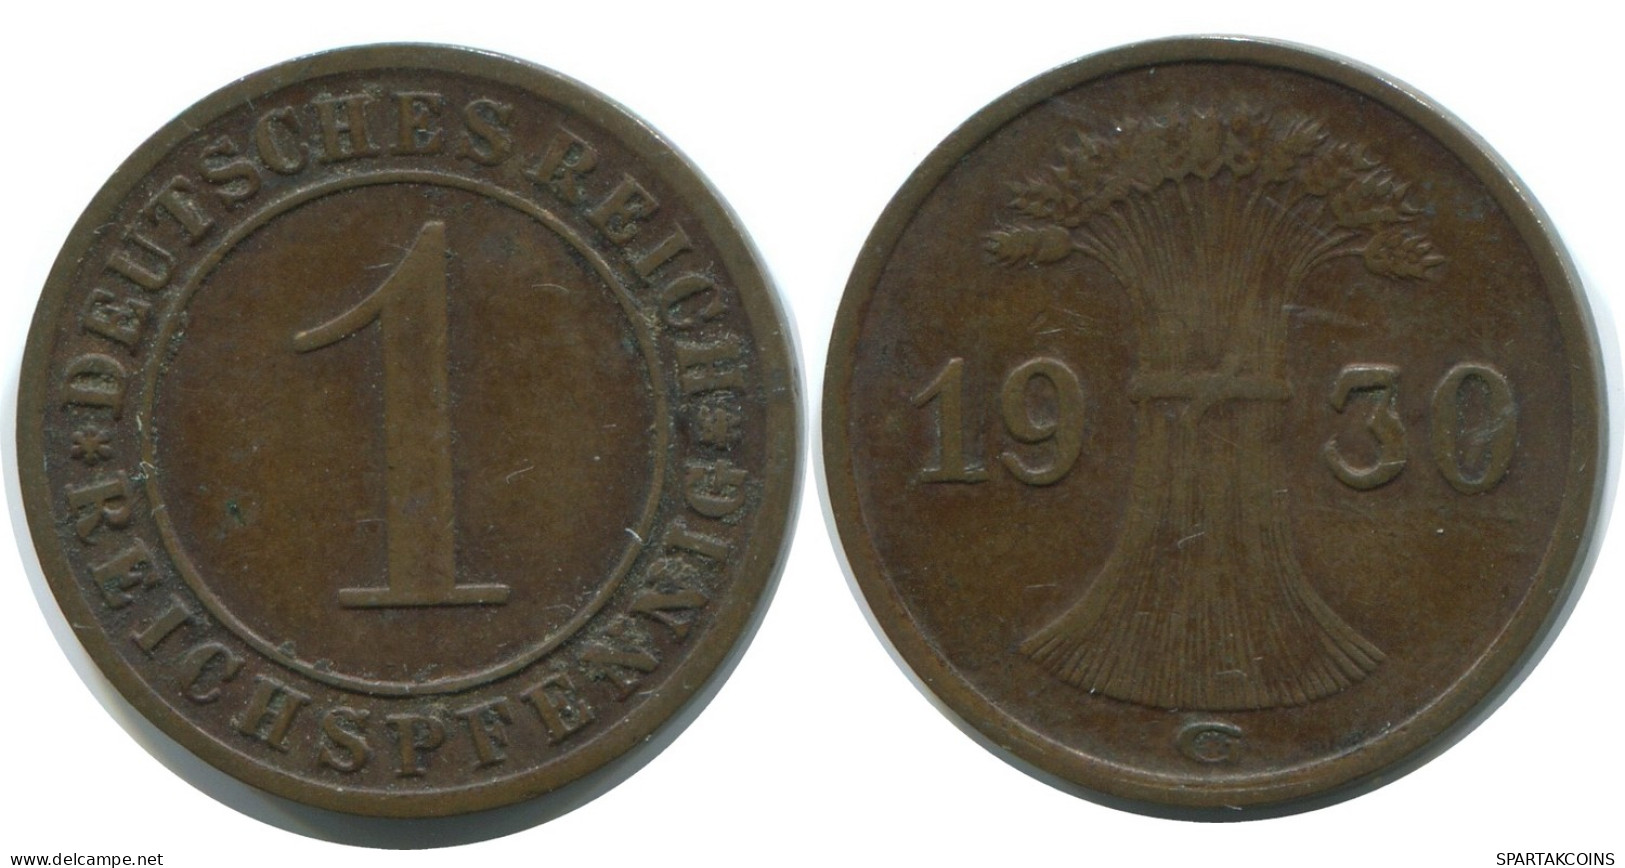 1 REICHSPFENNIG 1930 G ALEMANIA Moneda GERMANY #AE210.E - 1 Renten- & 1 Reichspfennig